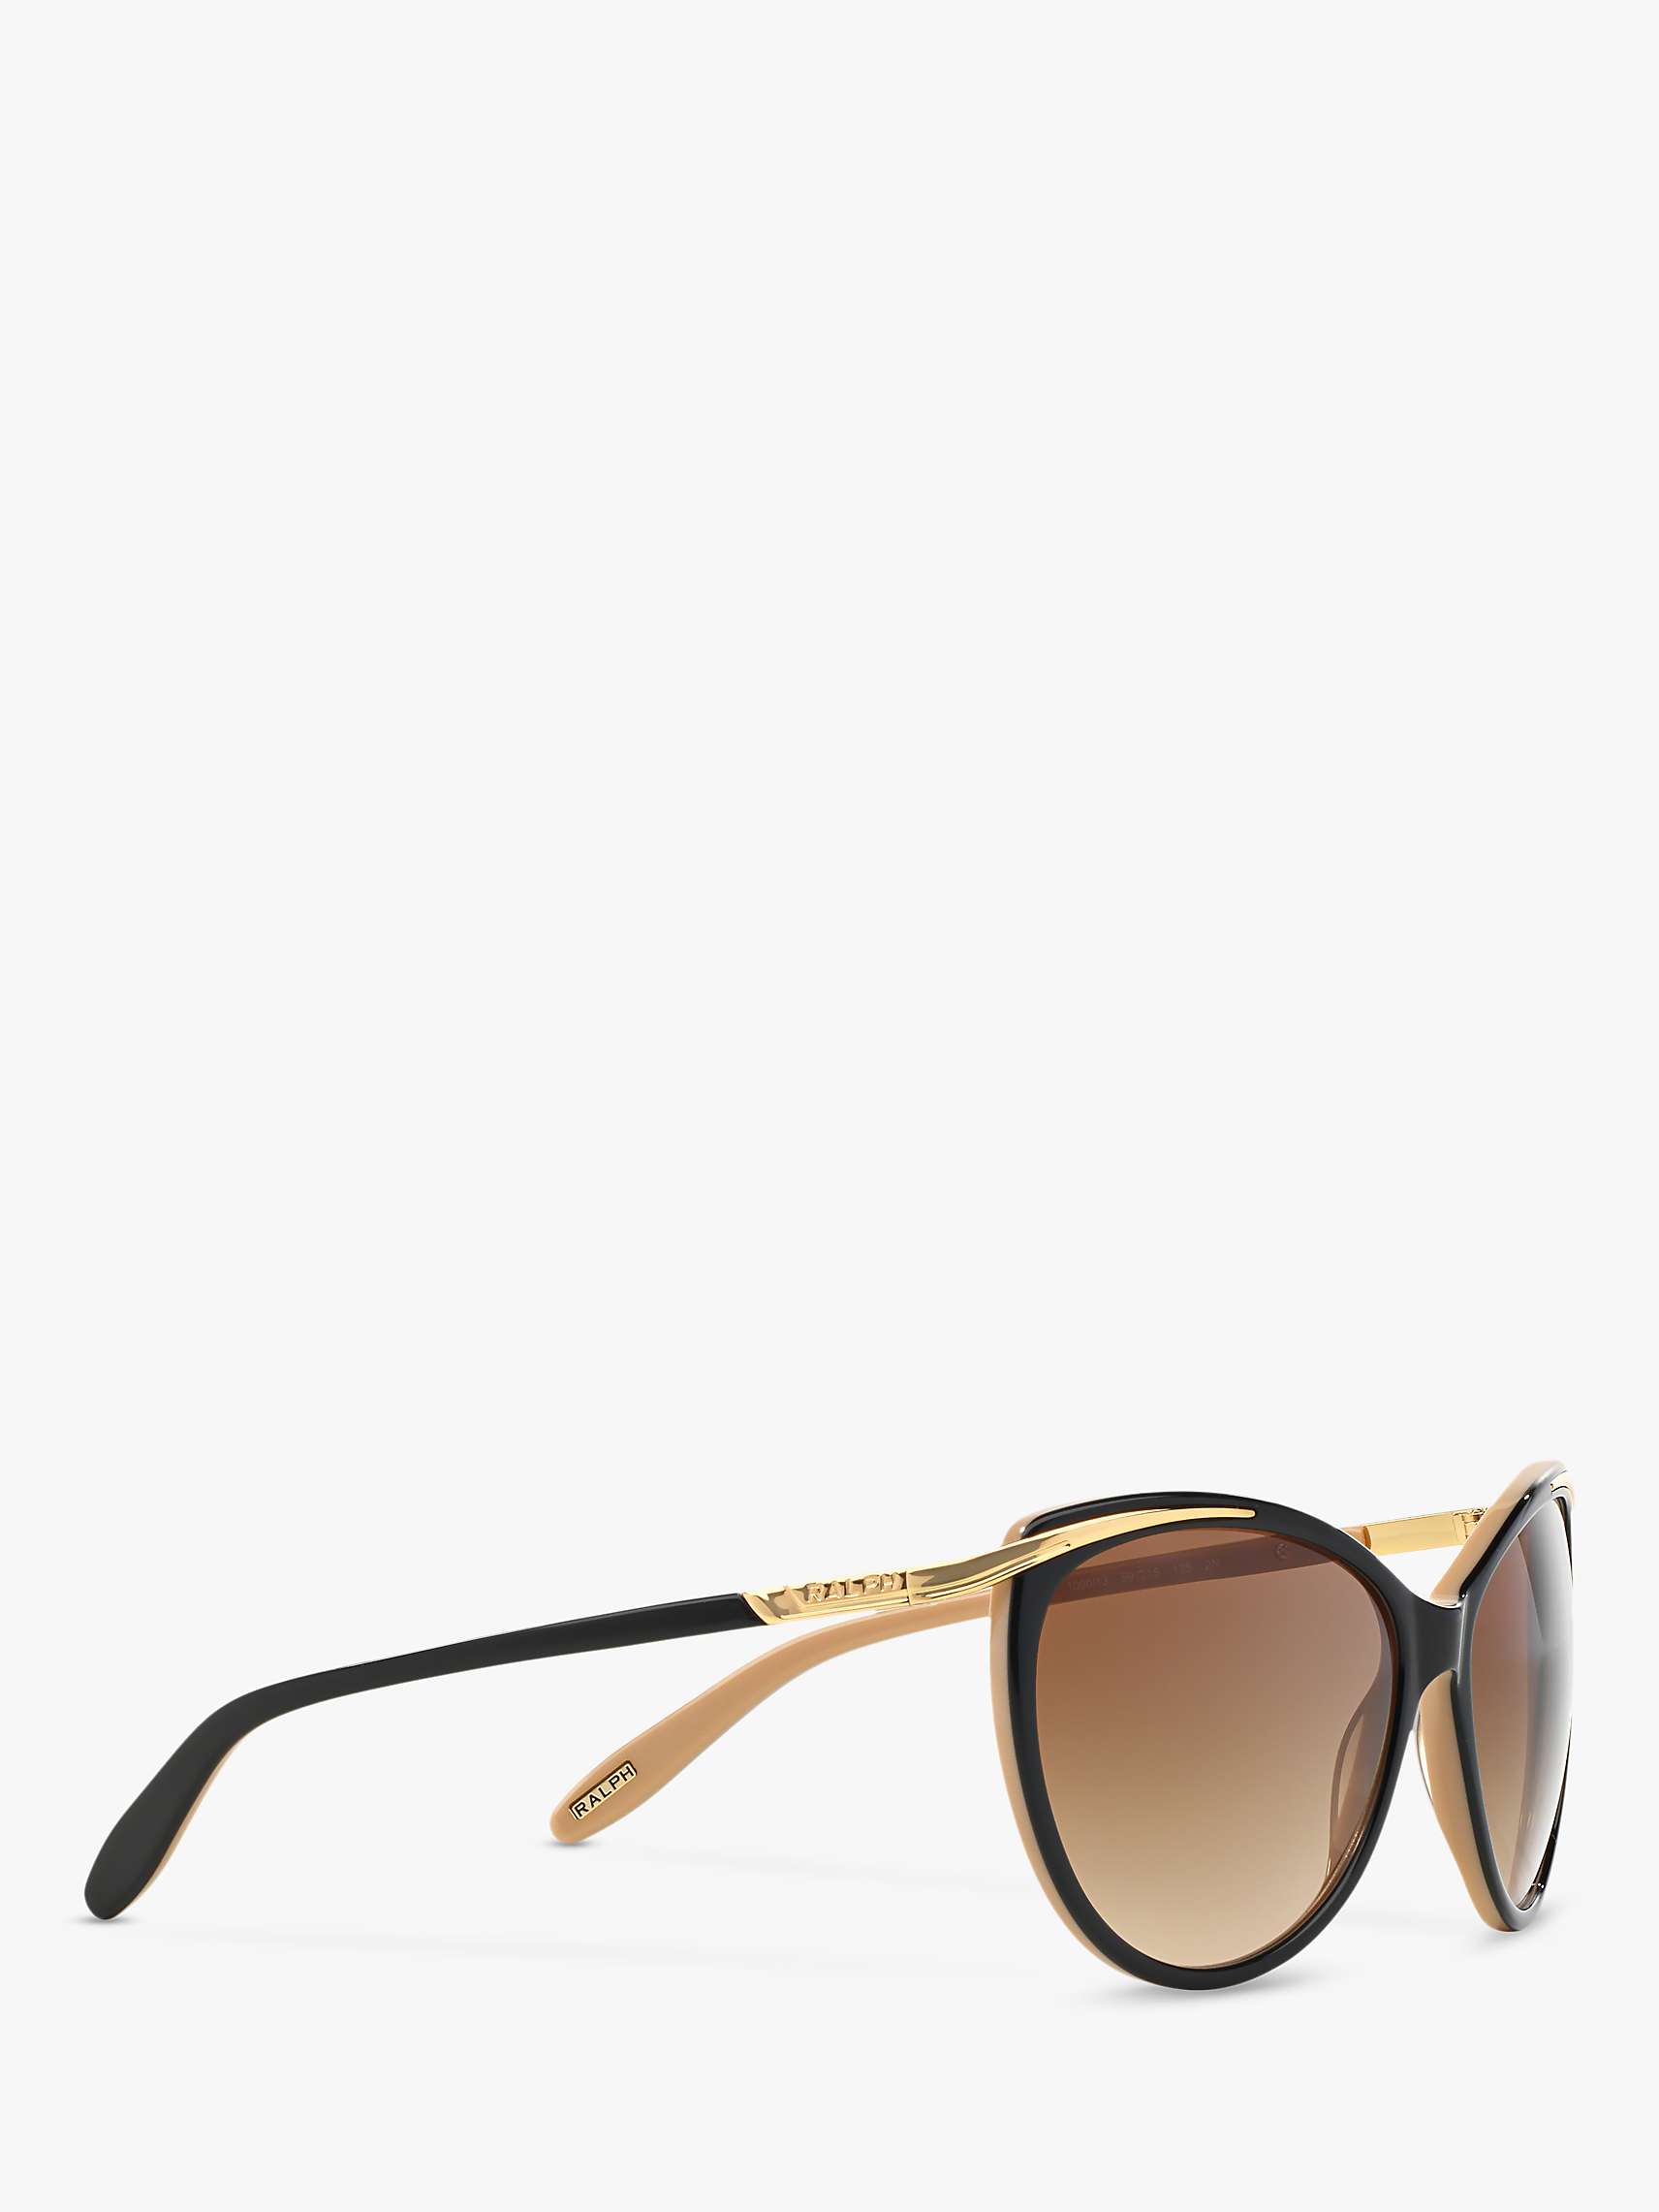 Buy Ralph Lauren RA5150 Women's Cat's Eye Sunglasses, Black/Brown Gradient Online at johnlewis.com